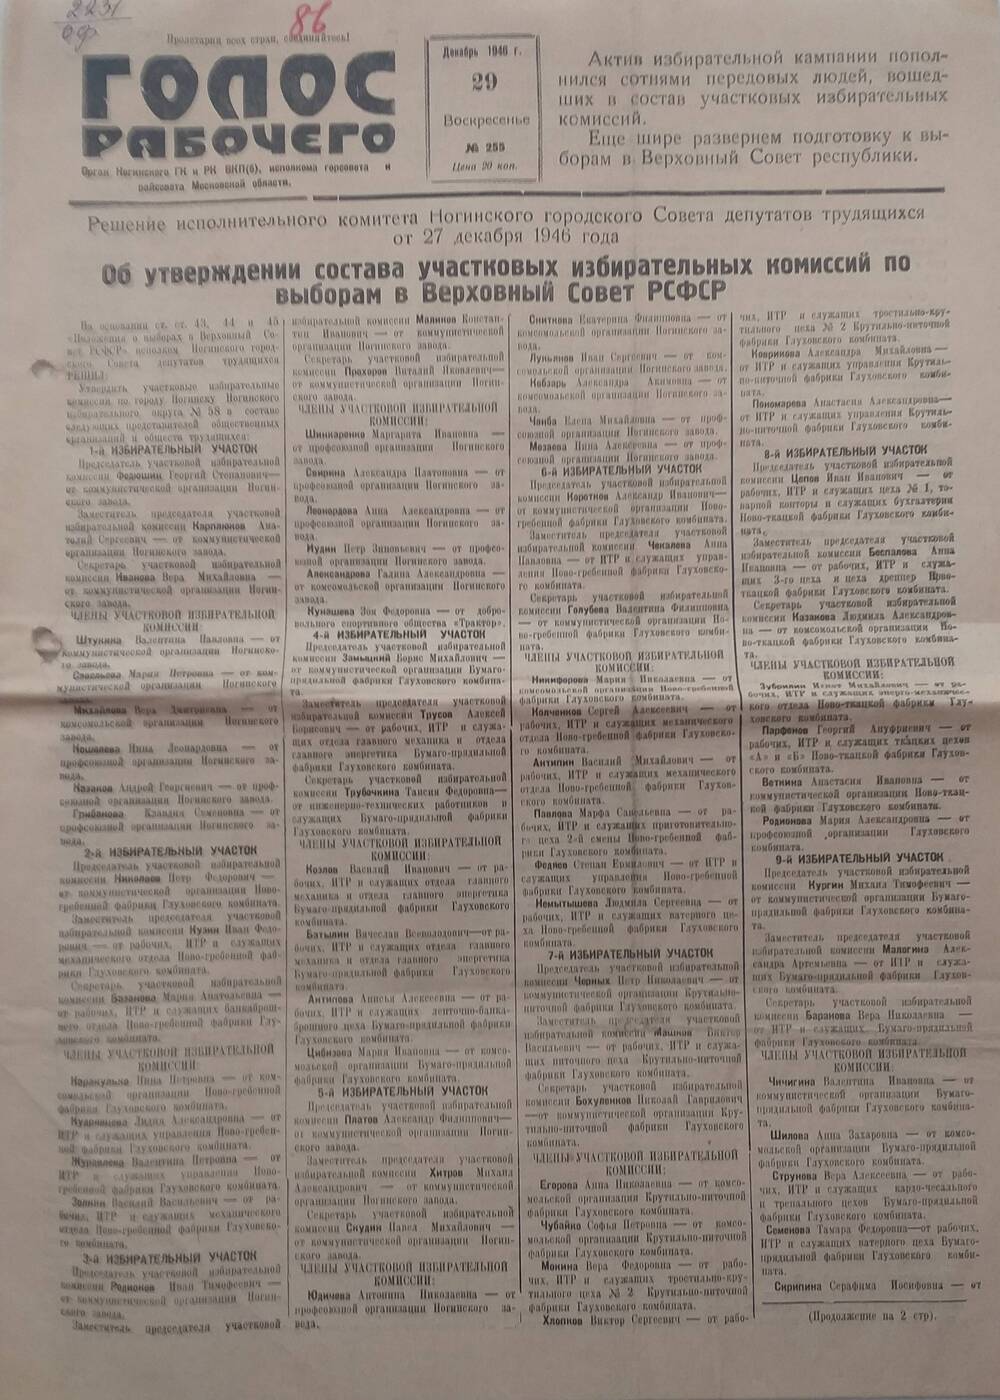 Газета Голос рабочего № 255, орган Ногинского ГК и РК ВКП (б), исполкомов горсовета и райсовета Московской области,  от 
29 декабря 1946 года.